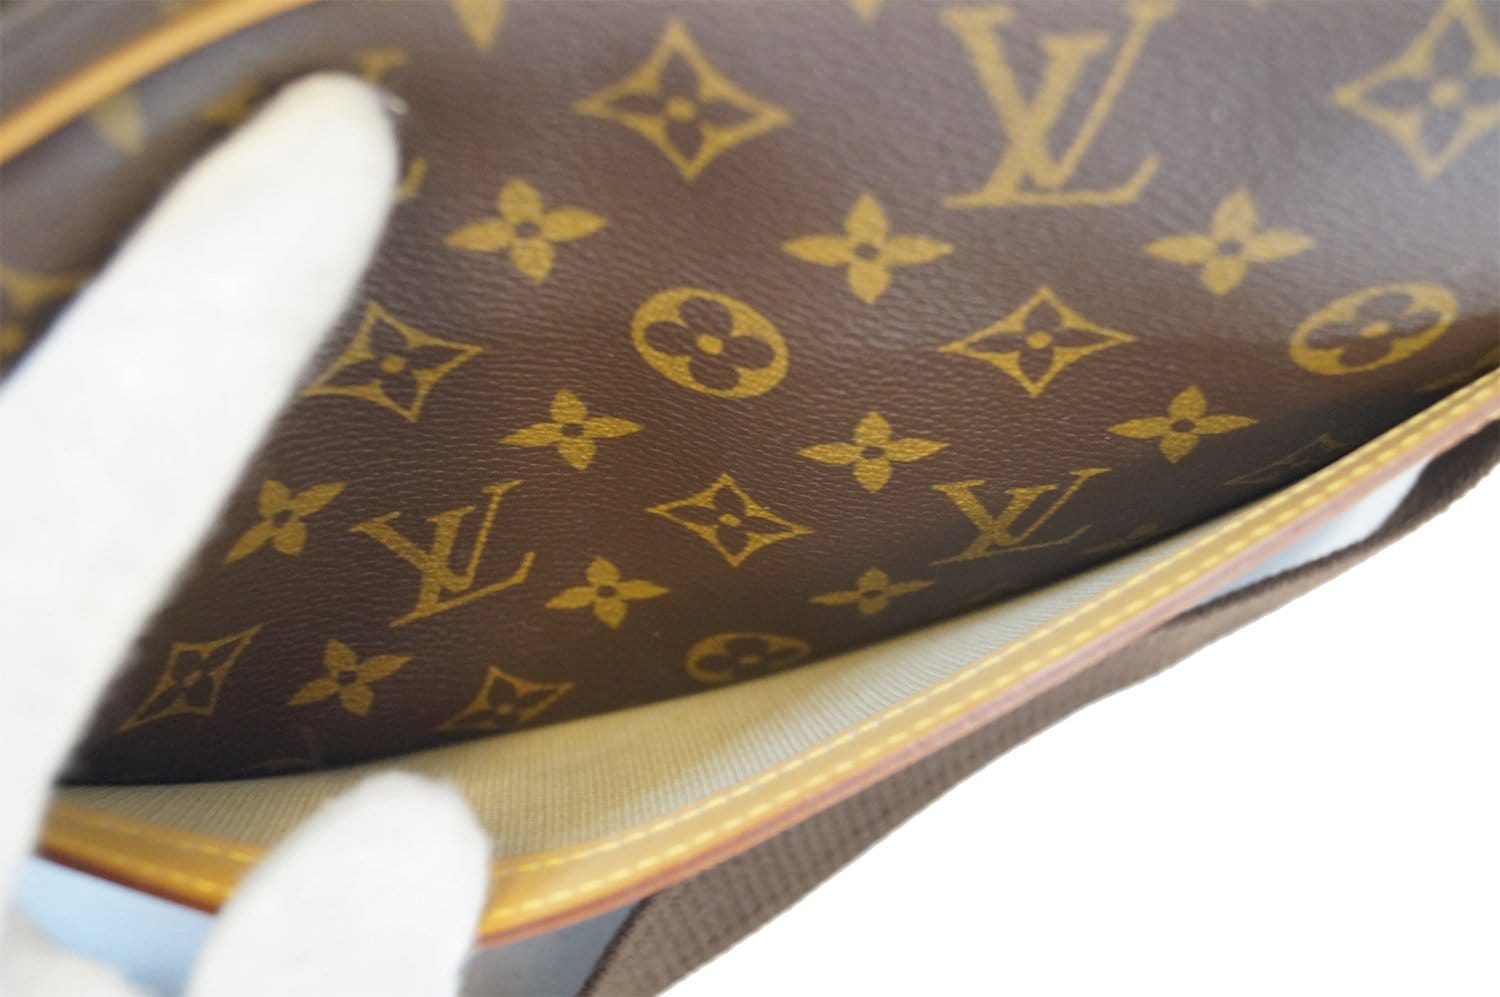 Louis Vuitton Reporter – The Brand Collector